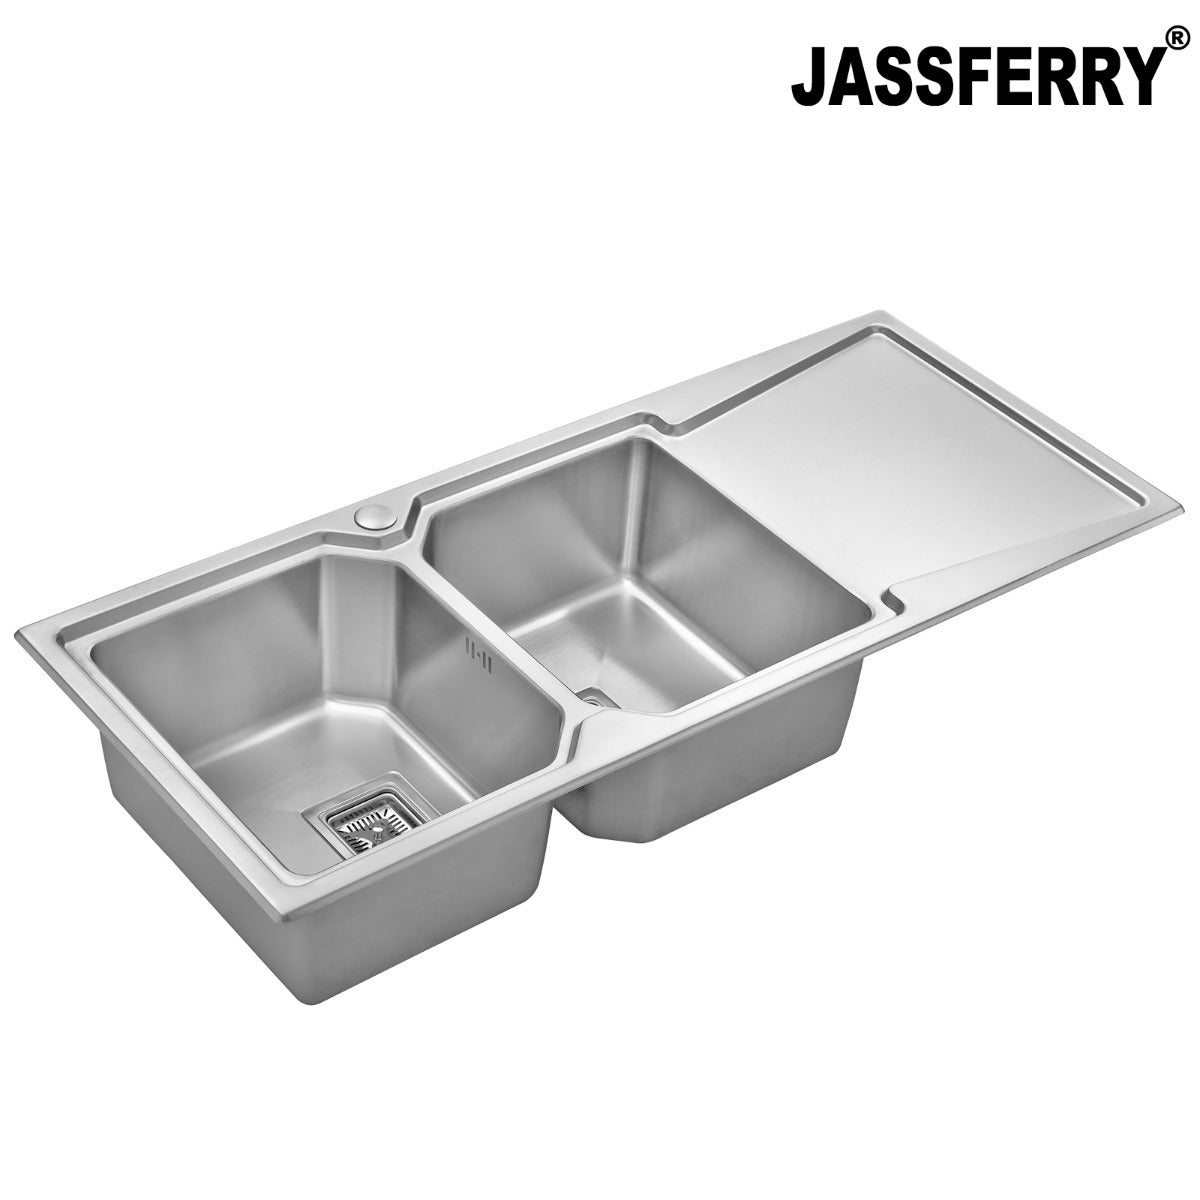 JassferryJASSFERRY Brilliant Stainless Steel Kitchen Sink Double Bowl Righthand DrainerKitchen Sinks